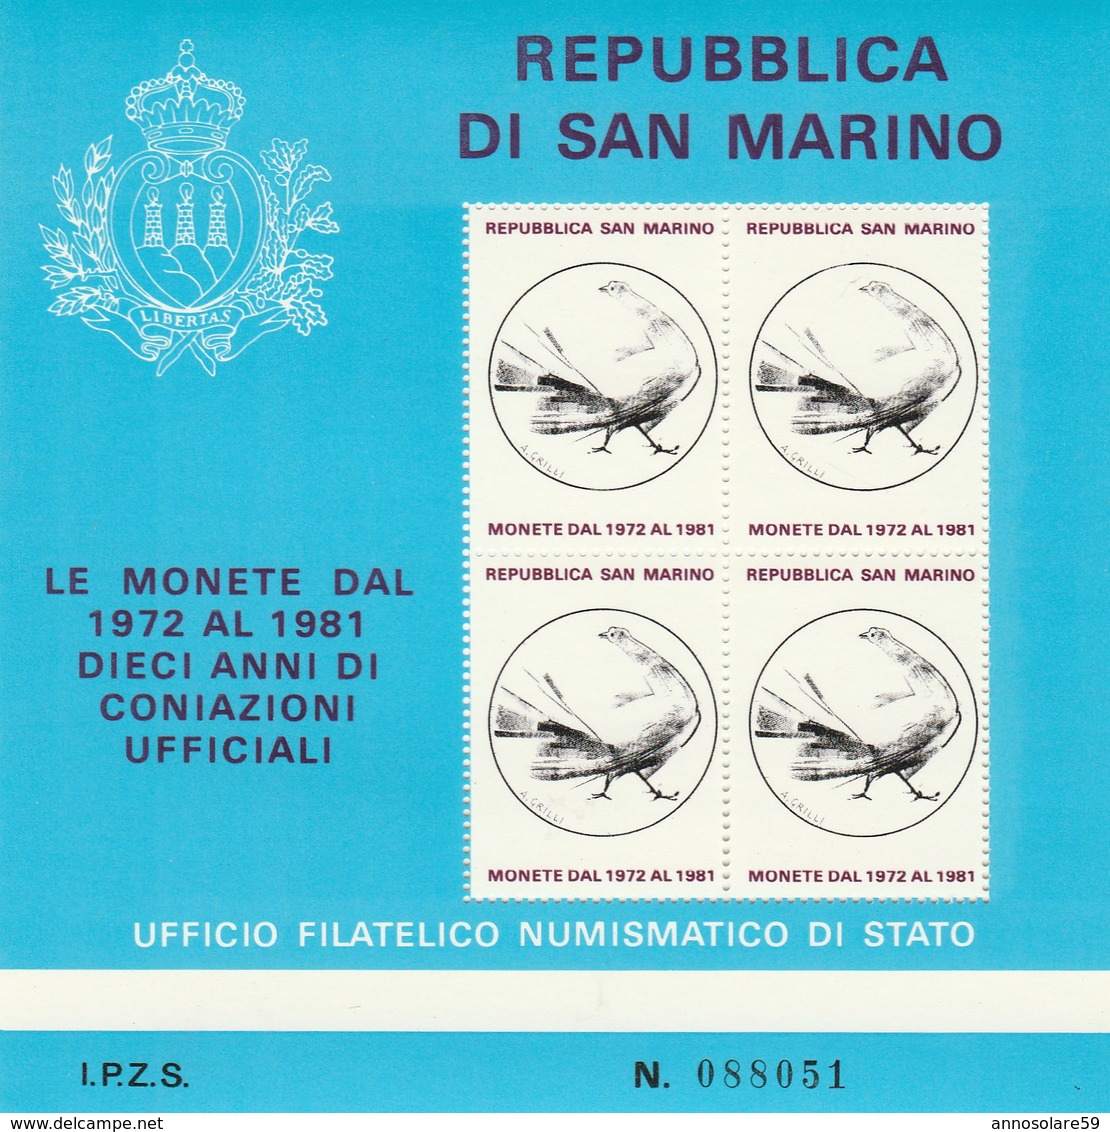 REPUBBLICA DI S. MARINO - LE MONETE DAL 1972 AL 1981 - FOGLIETTO FILATELICO (RARISSIMO) - NUOVO - LEGGI - Events & Commemorations